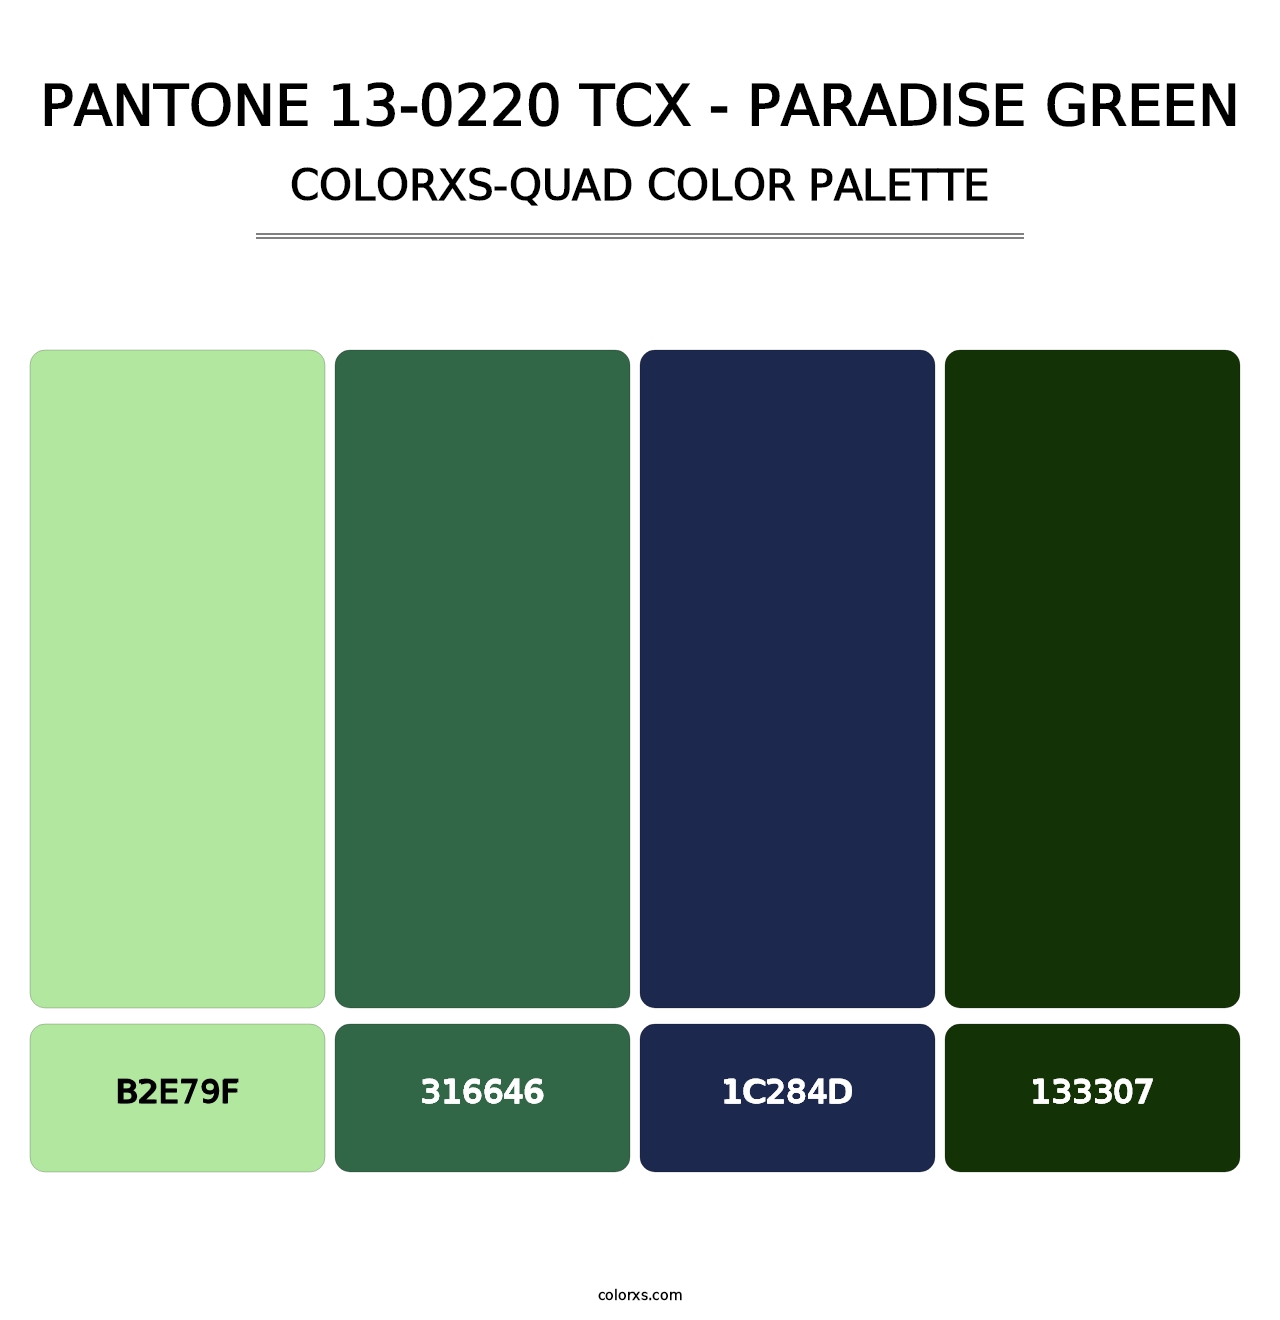 PANTONE 13-0220 TCX - Paradise Green - Colorxs Quad Palette